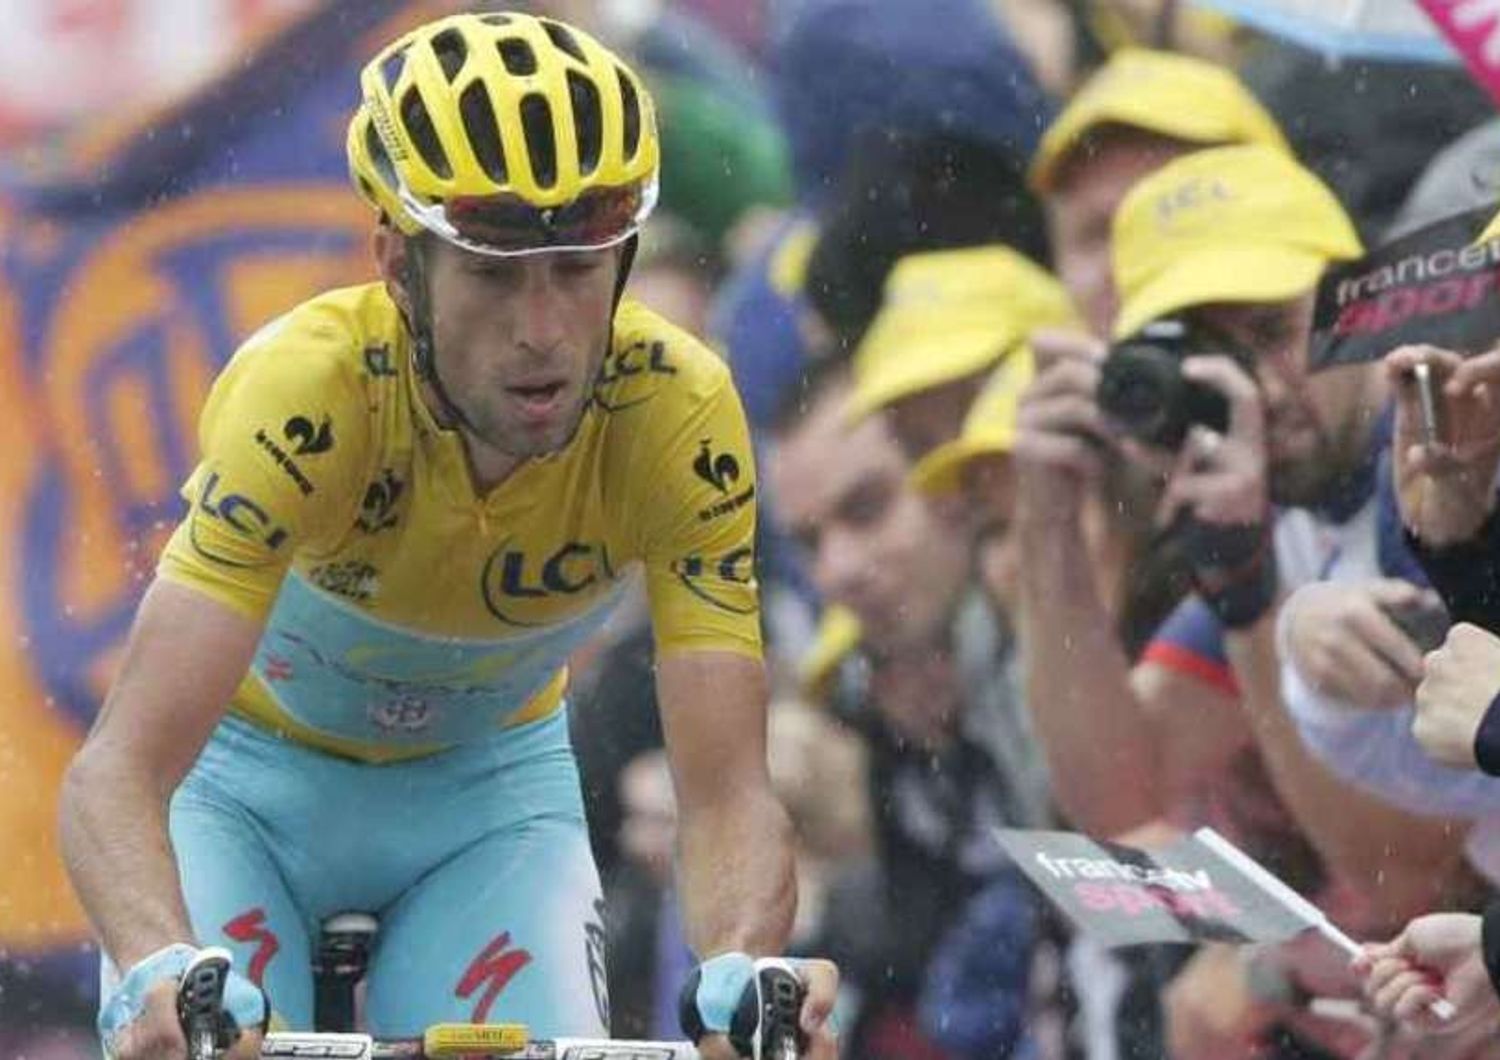 Tour 2014: Majka vince sulle Alpi, Nibali (secondo) consolida primato